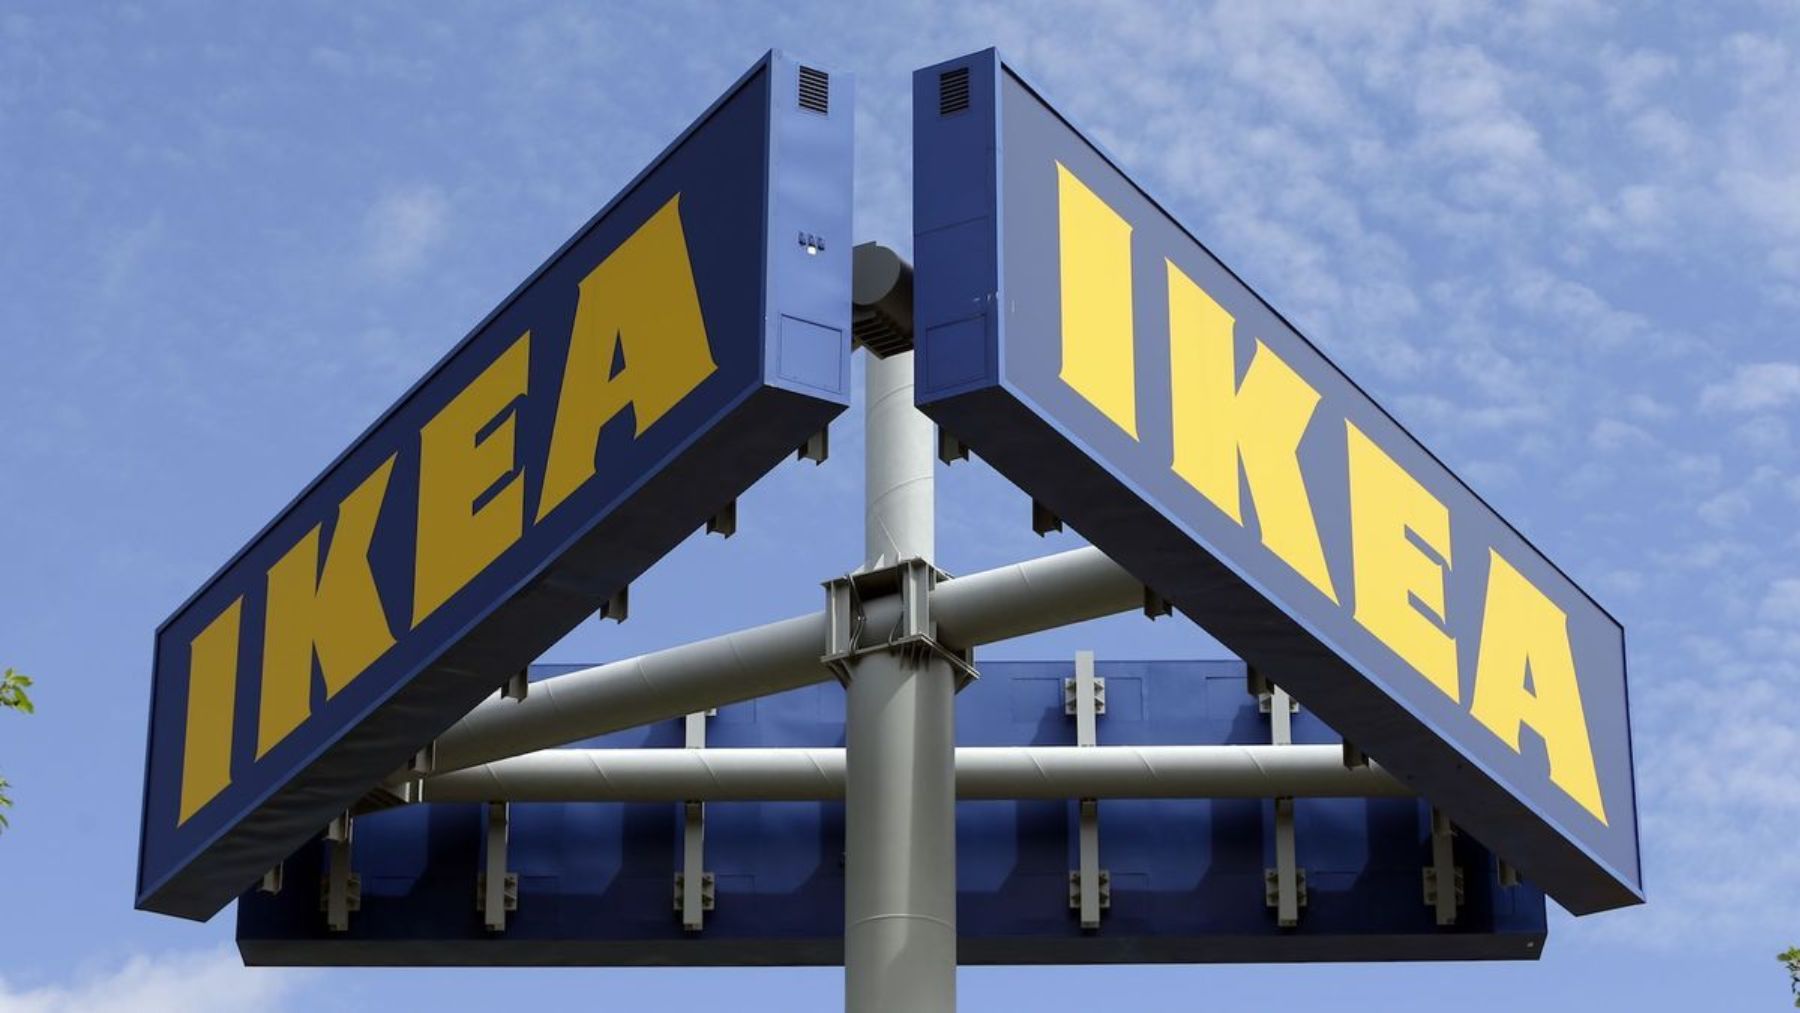 Estantería Ikea